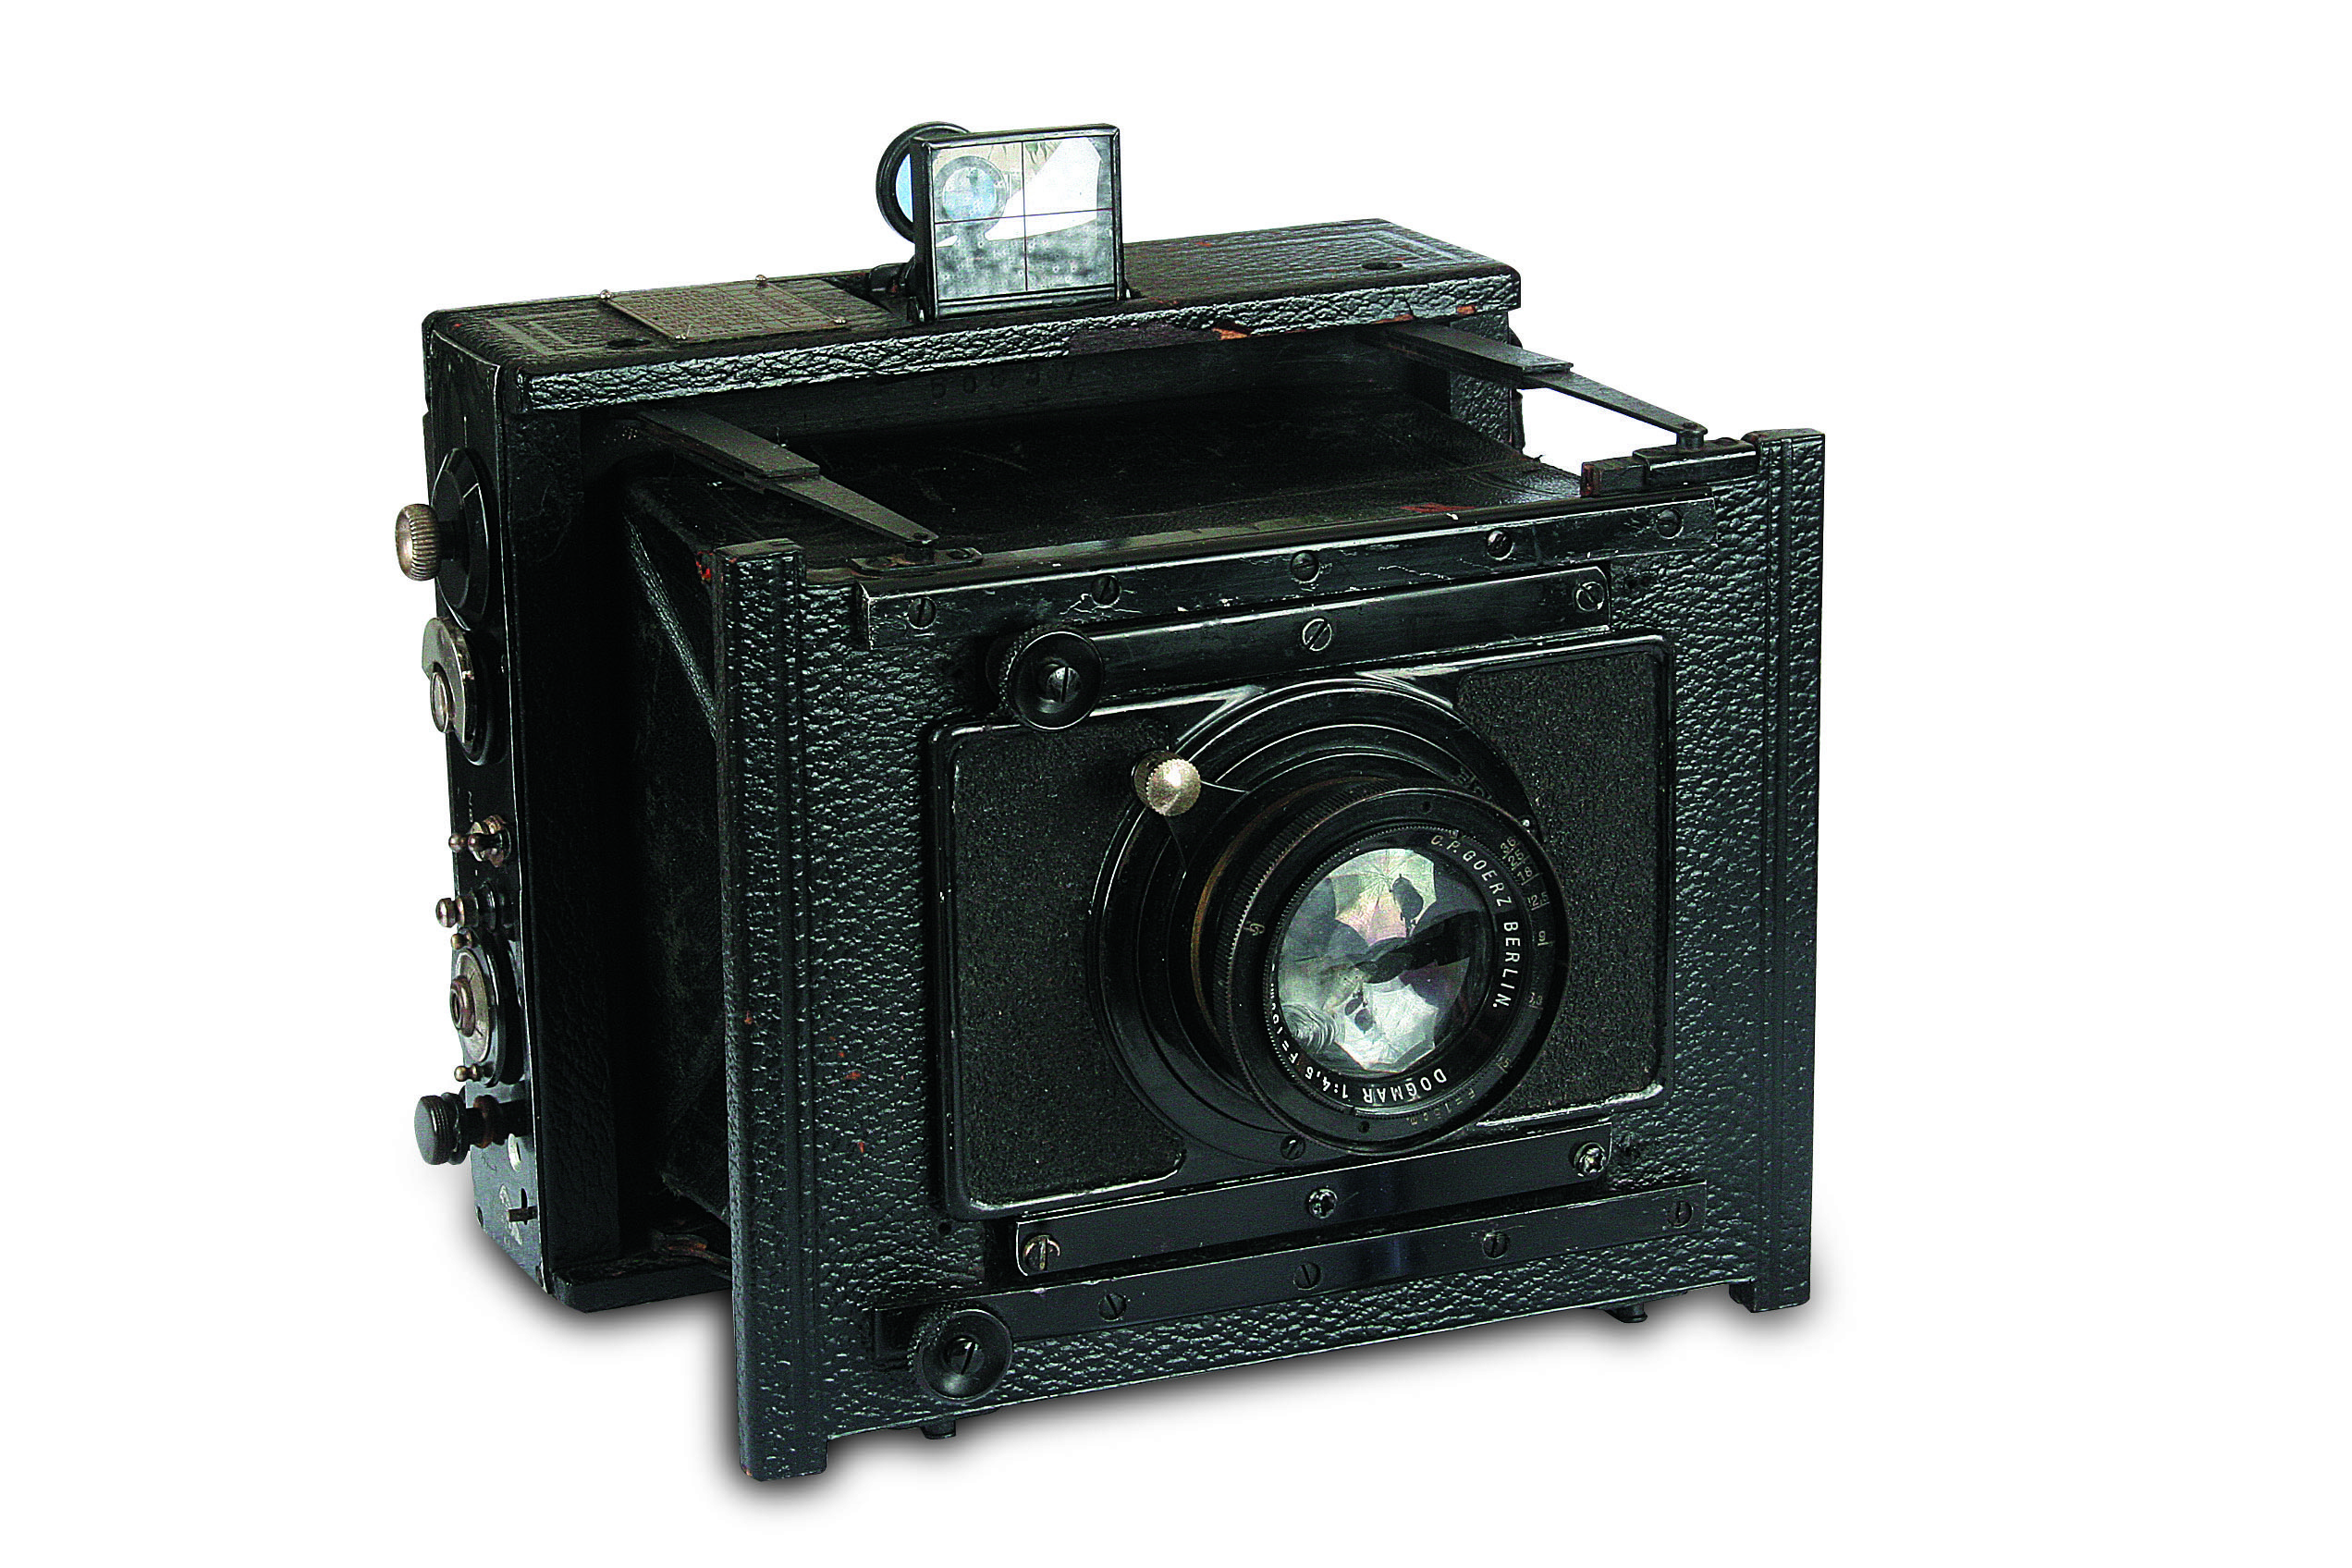 A fotografia social e o fotojornalismo do início do século 20 eram dominados por grandes câmeras, como esta alemã Goerz Anschütz de 1911